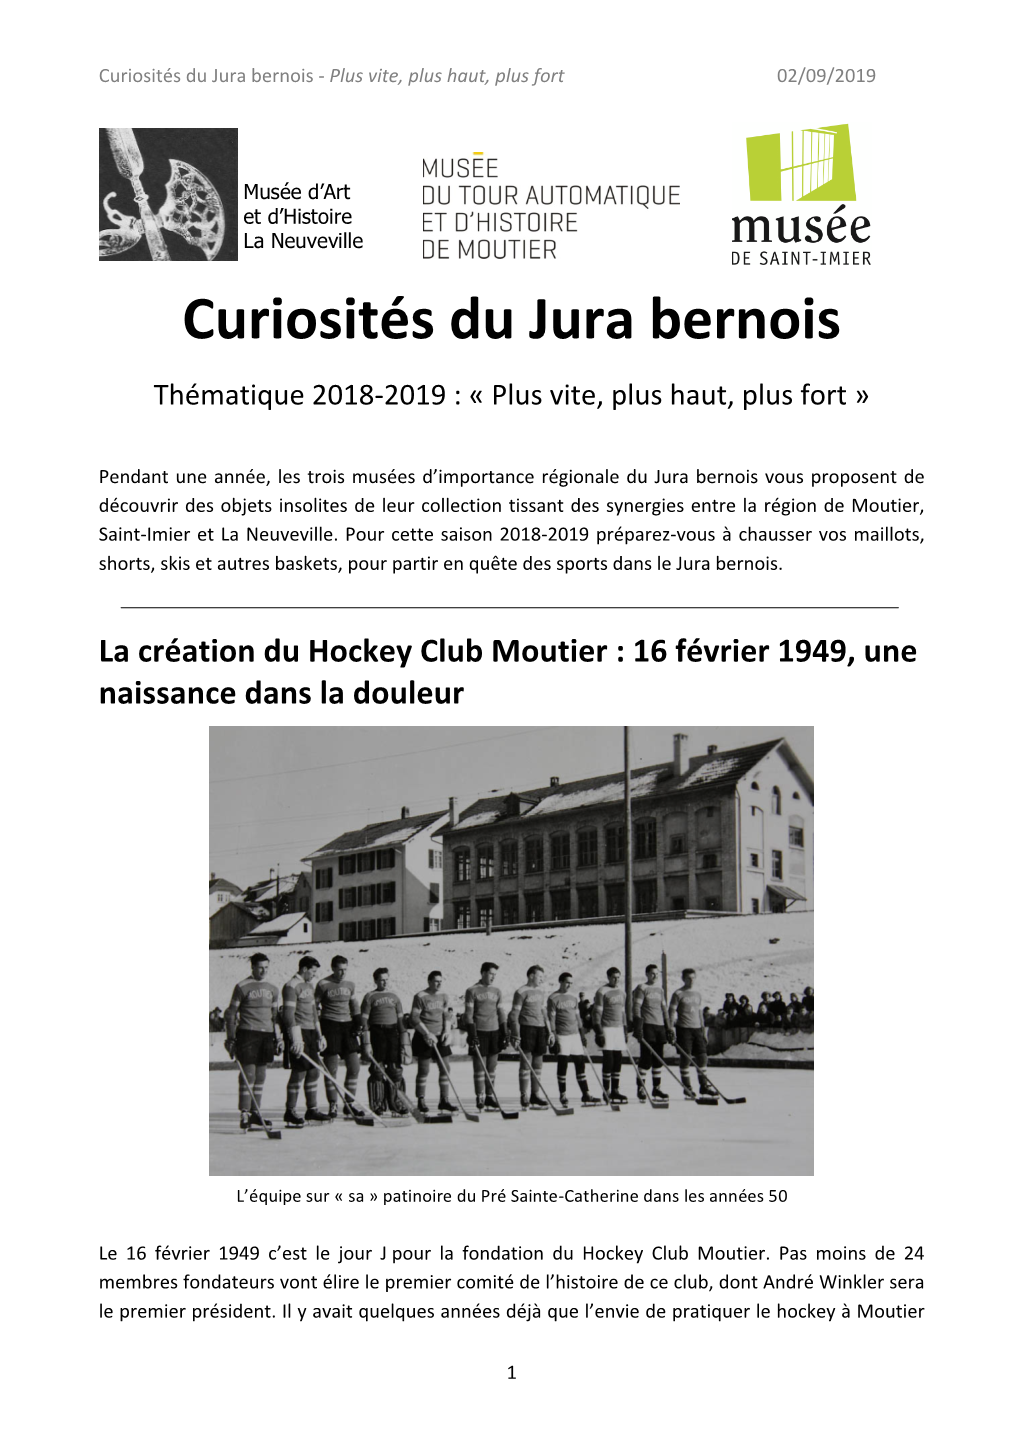 2019 Curiosités Du Jura Bernois.Pdf